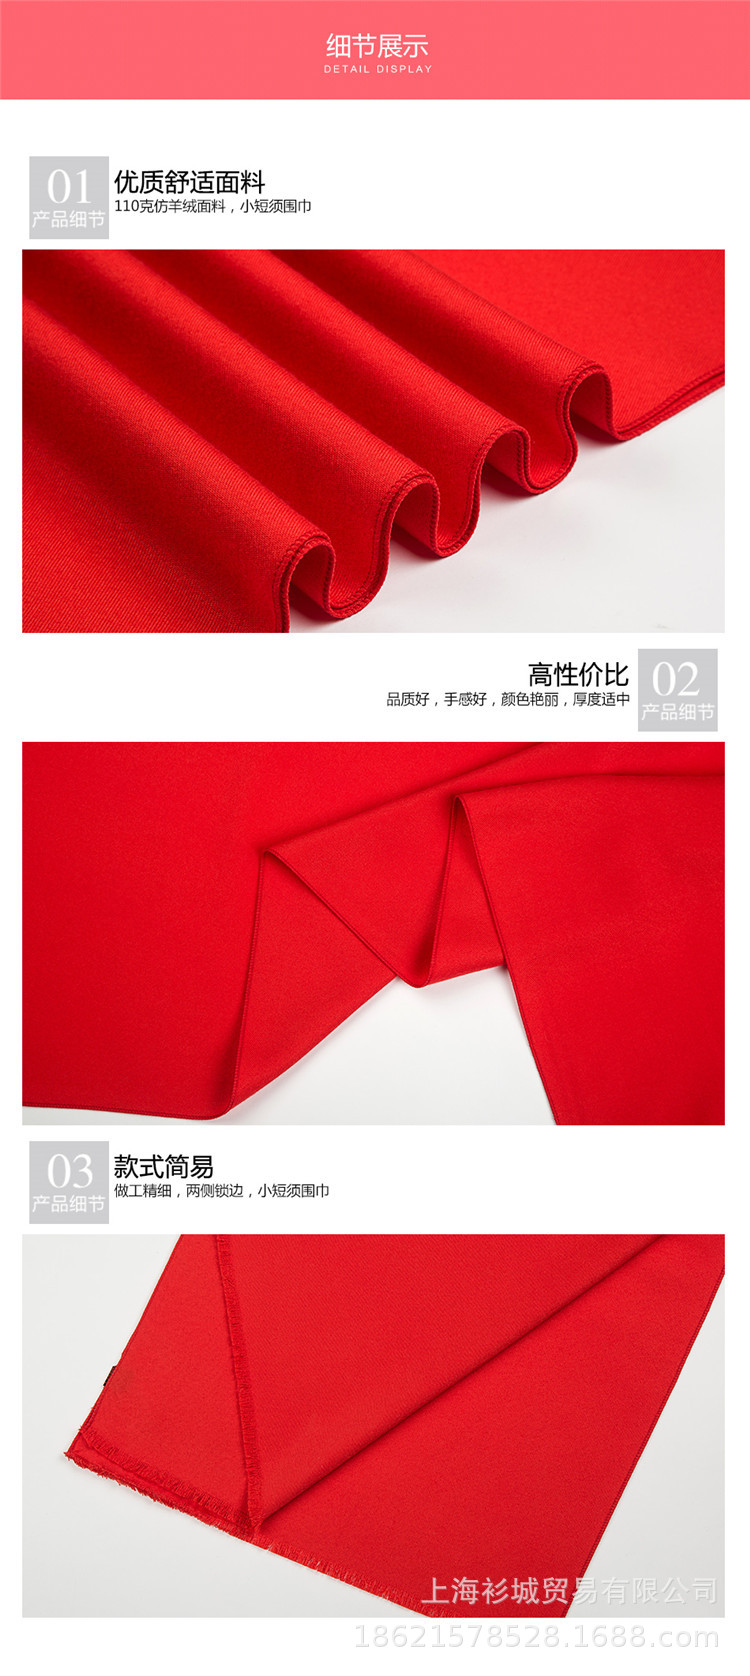 中国大红仿羊绒纯棉围巾定制开业庆典纪念公司年会聚会印字logo图示例图28